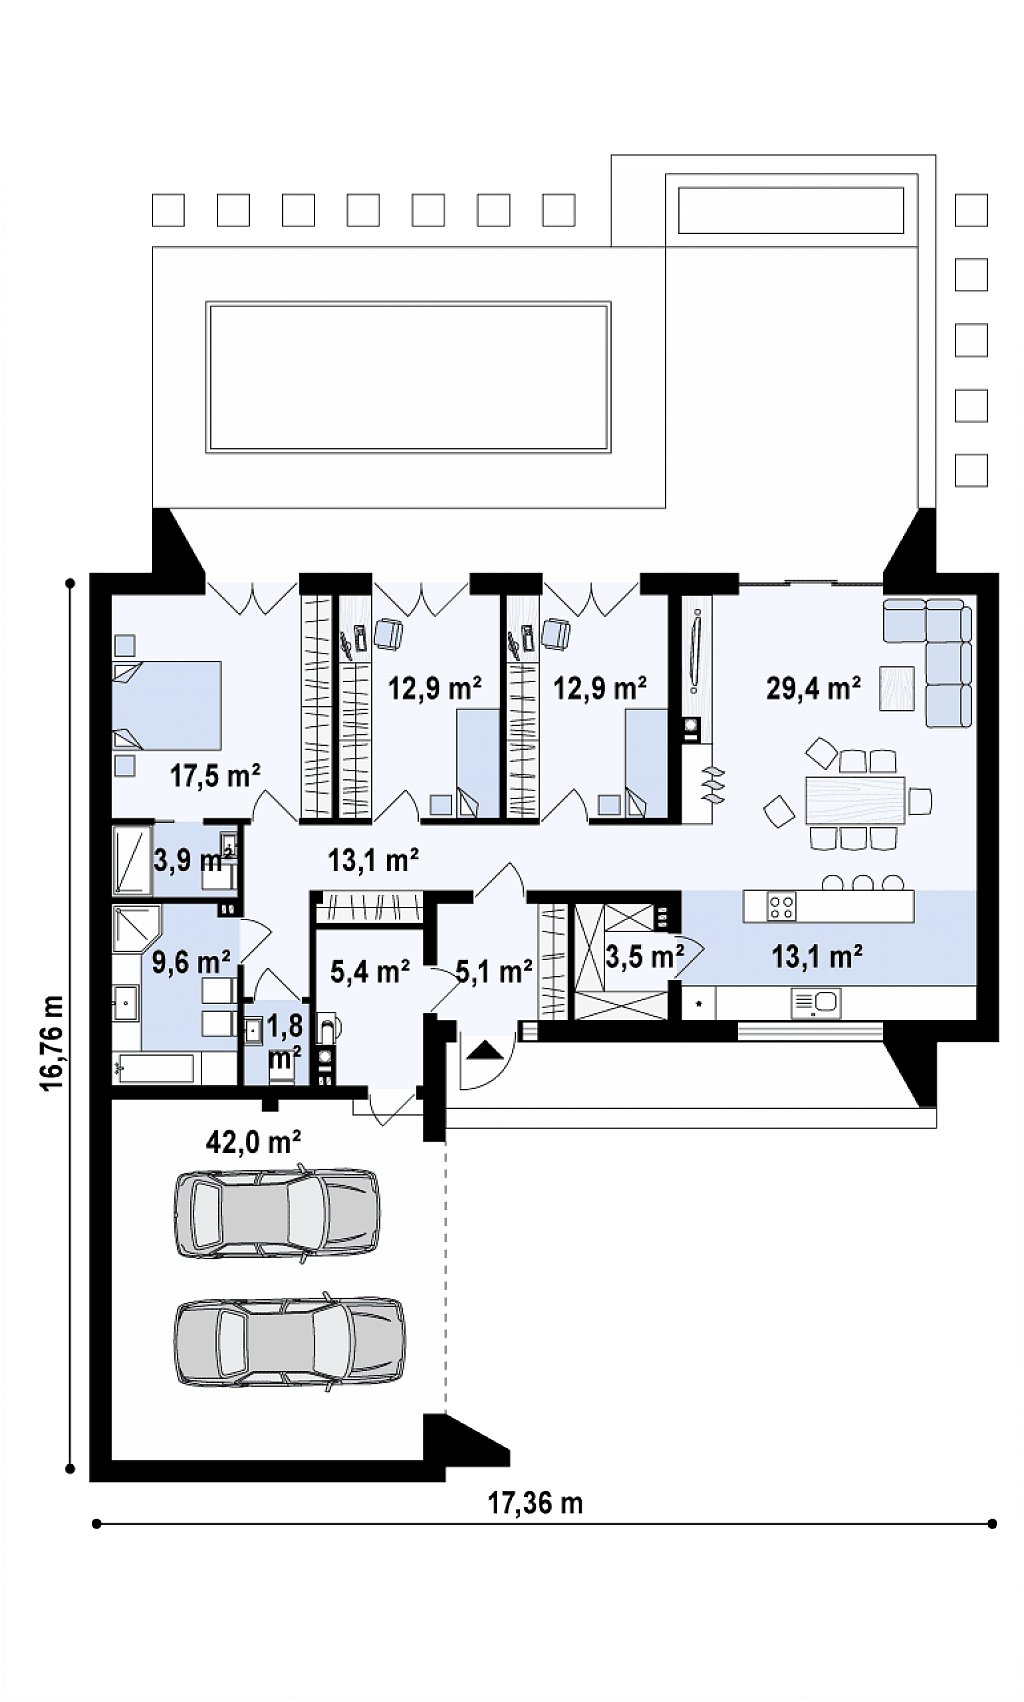 Современный плоскокровельный дом с компактной и удобной планировкой план помещений 1